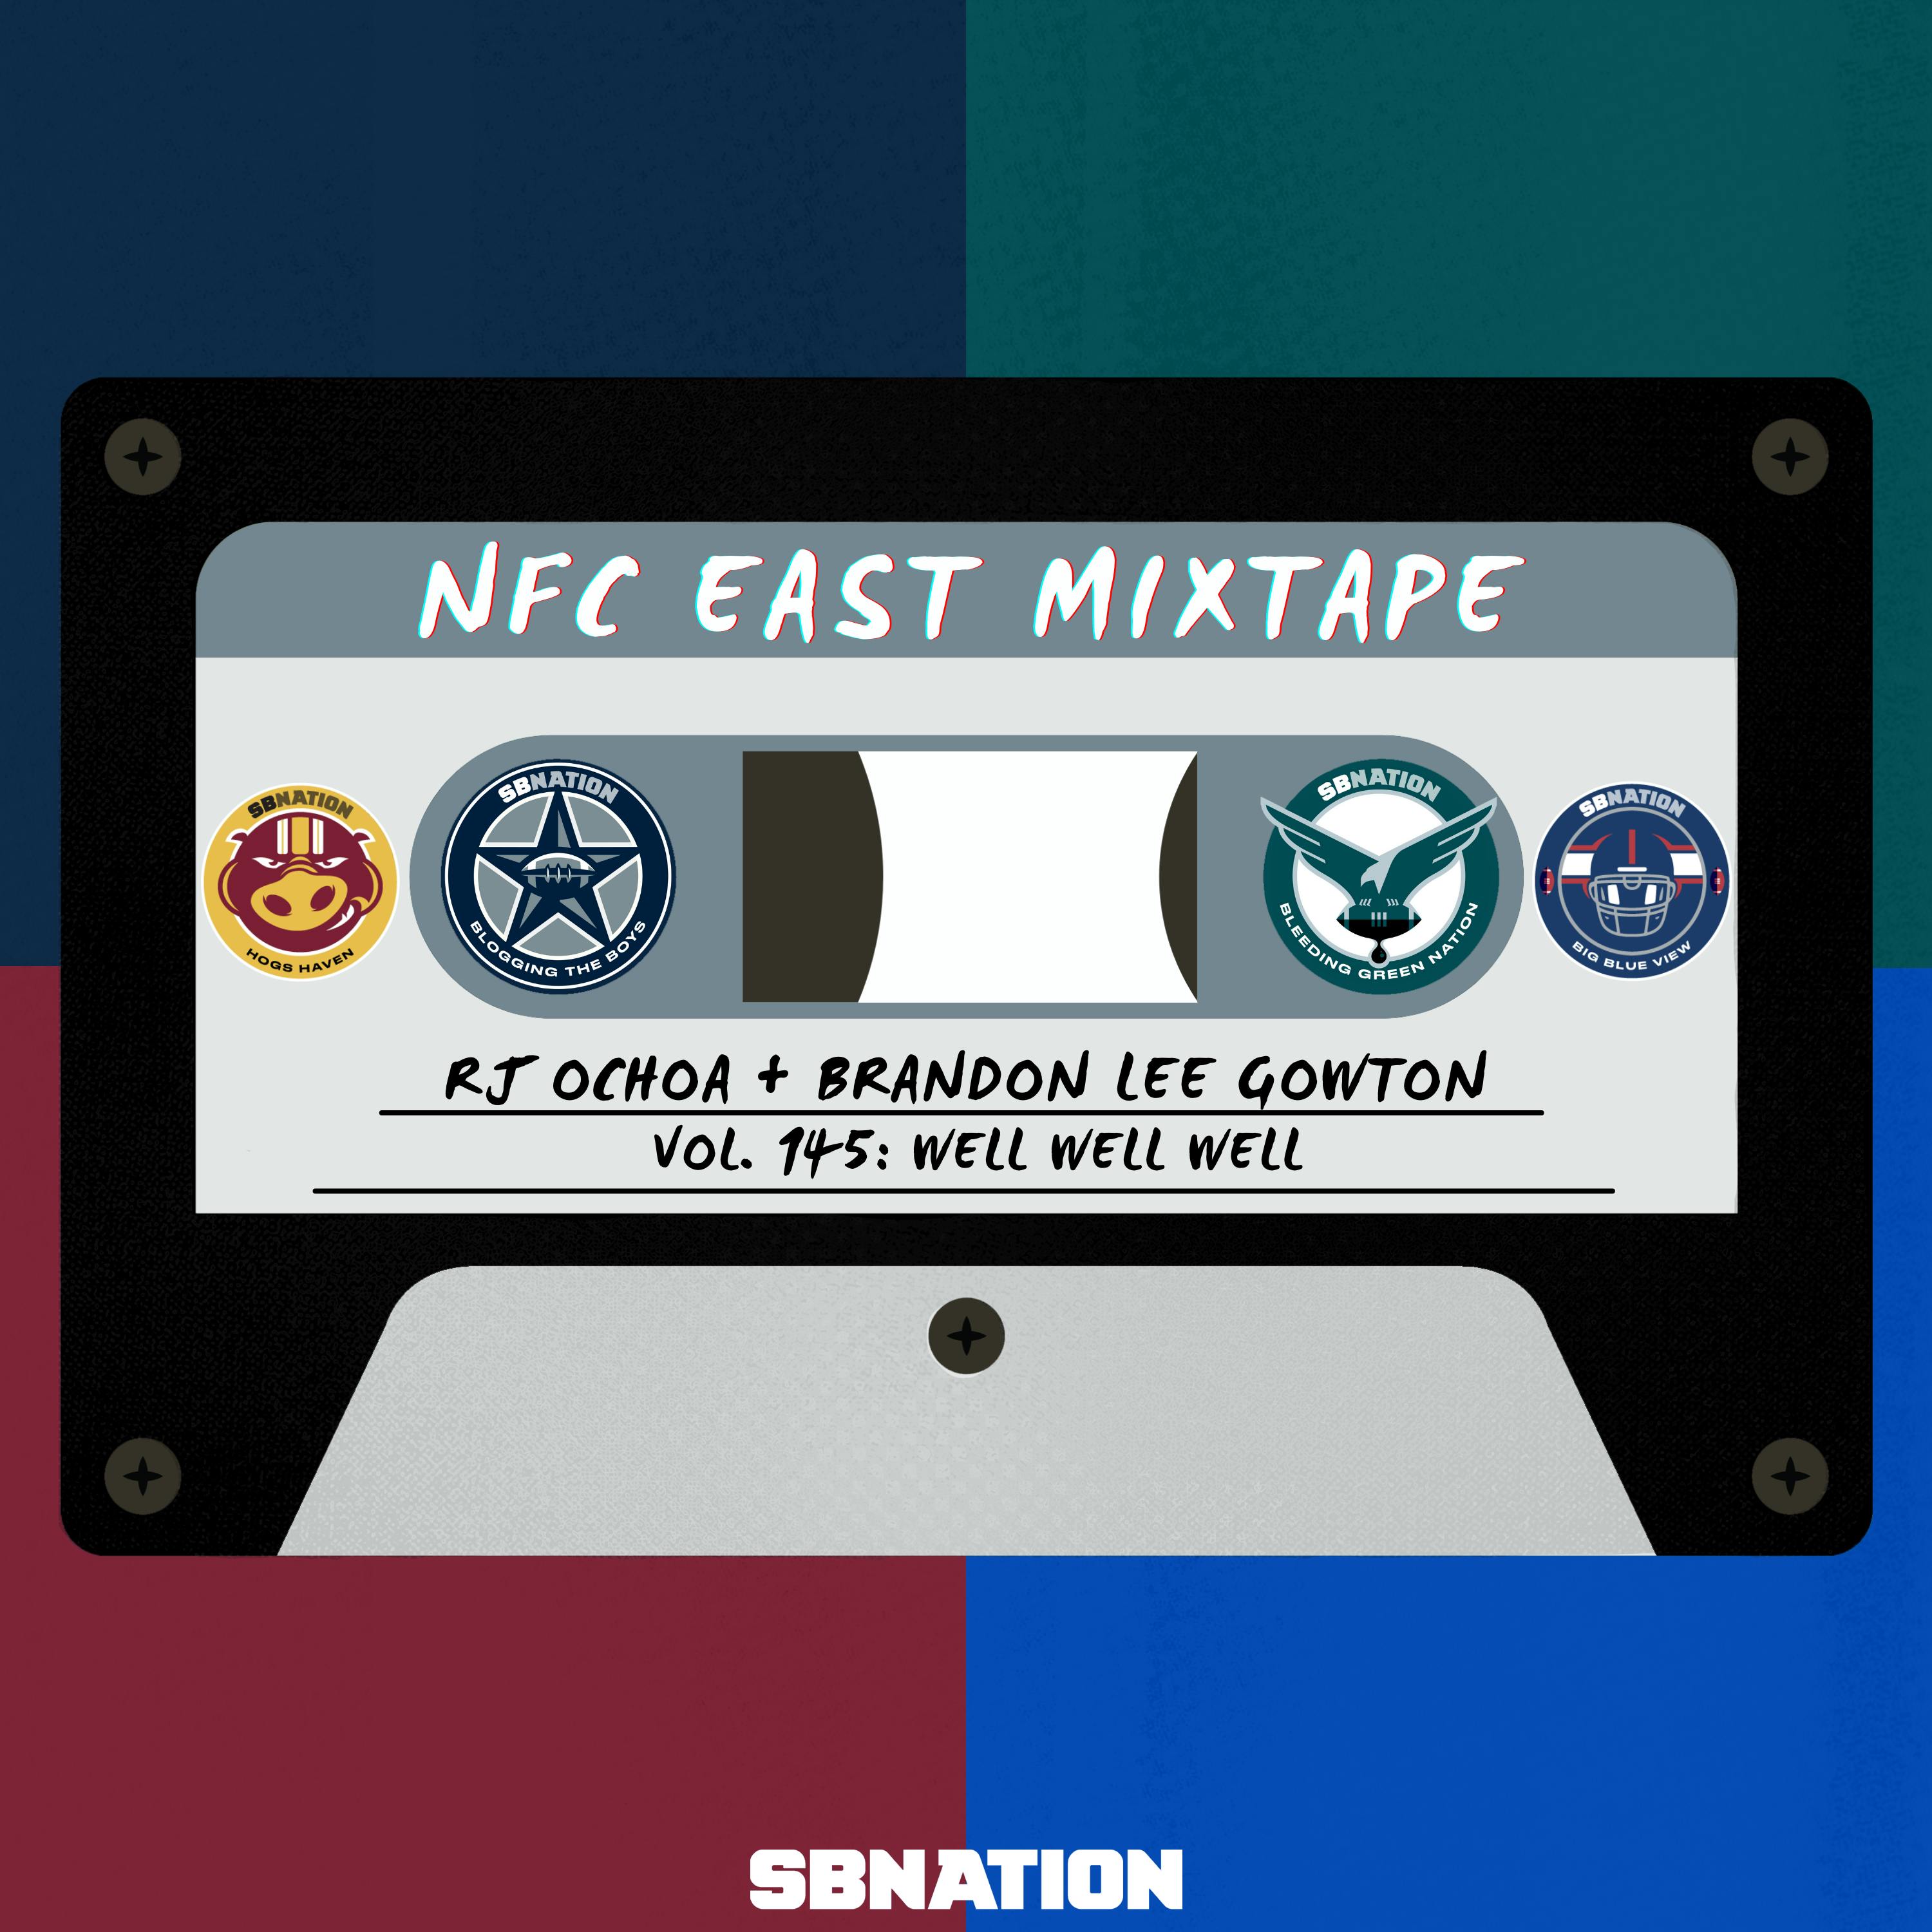 NFC East Mixtape Vol. 145: Well Well Well